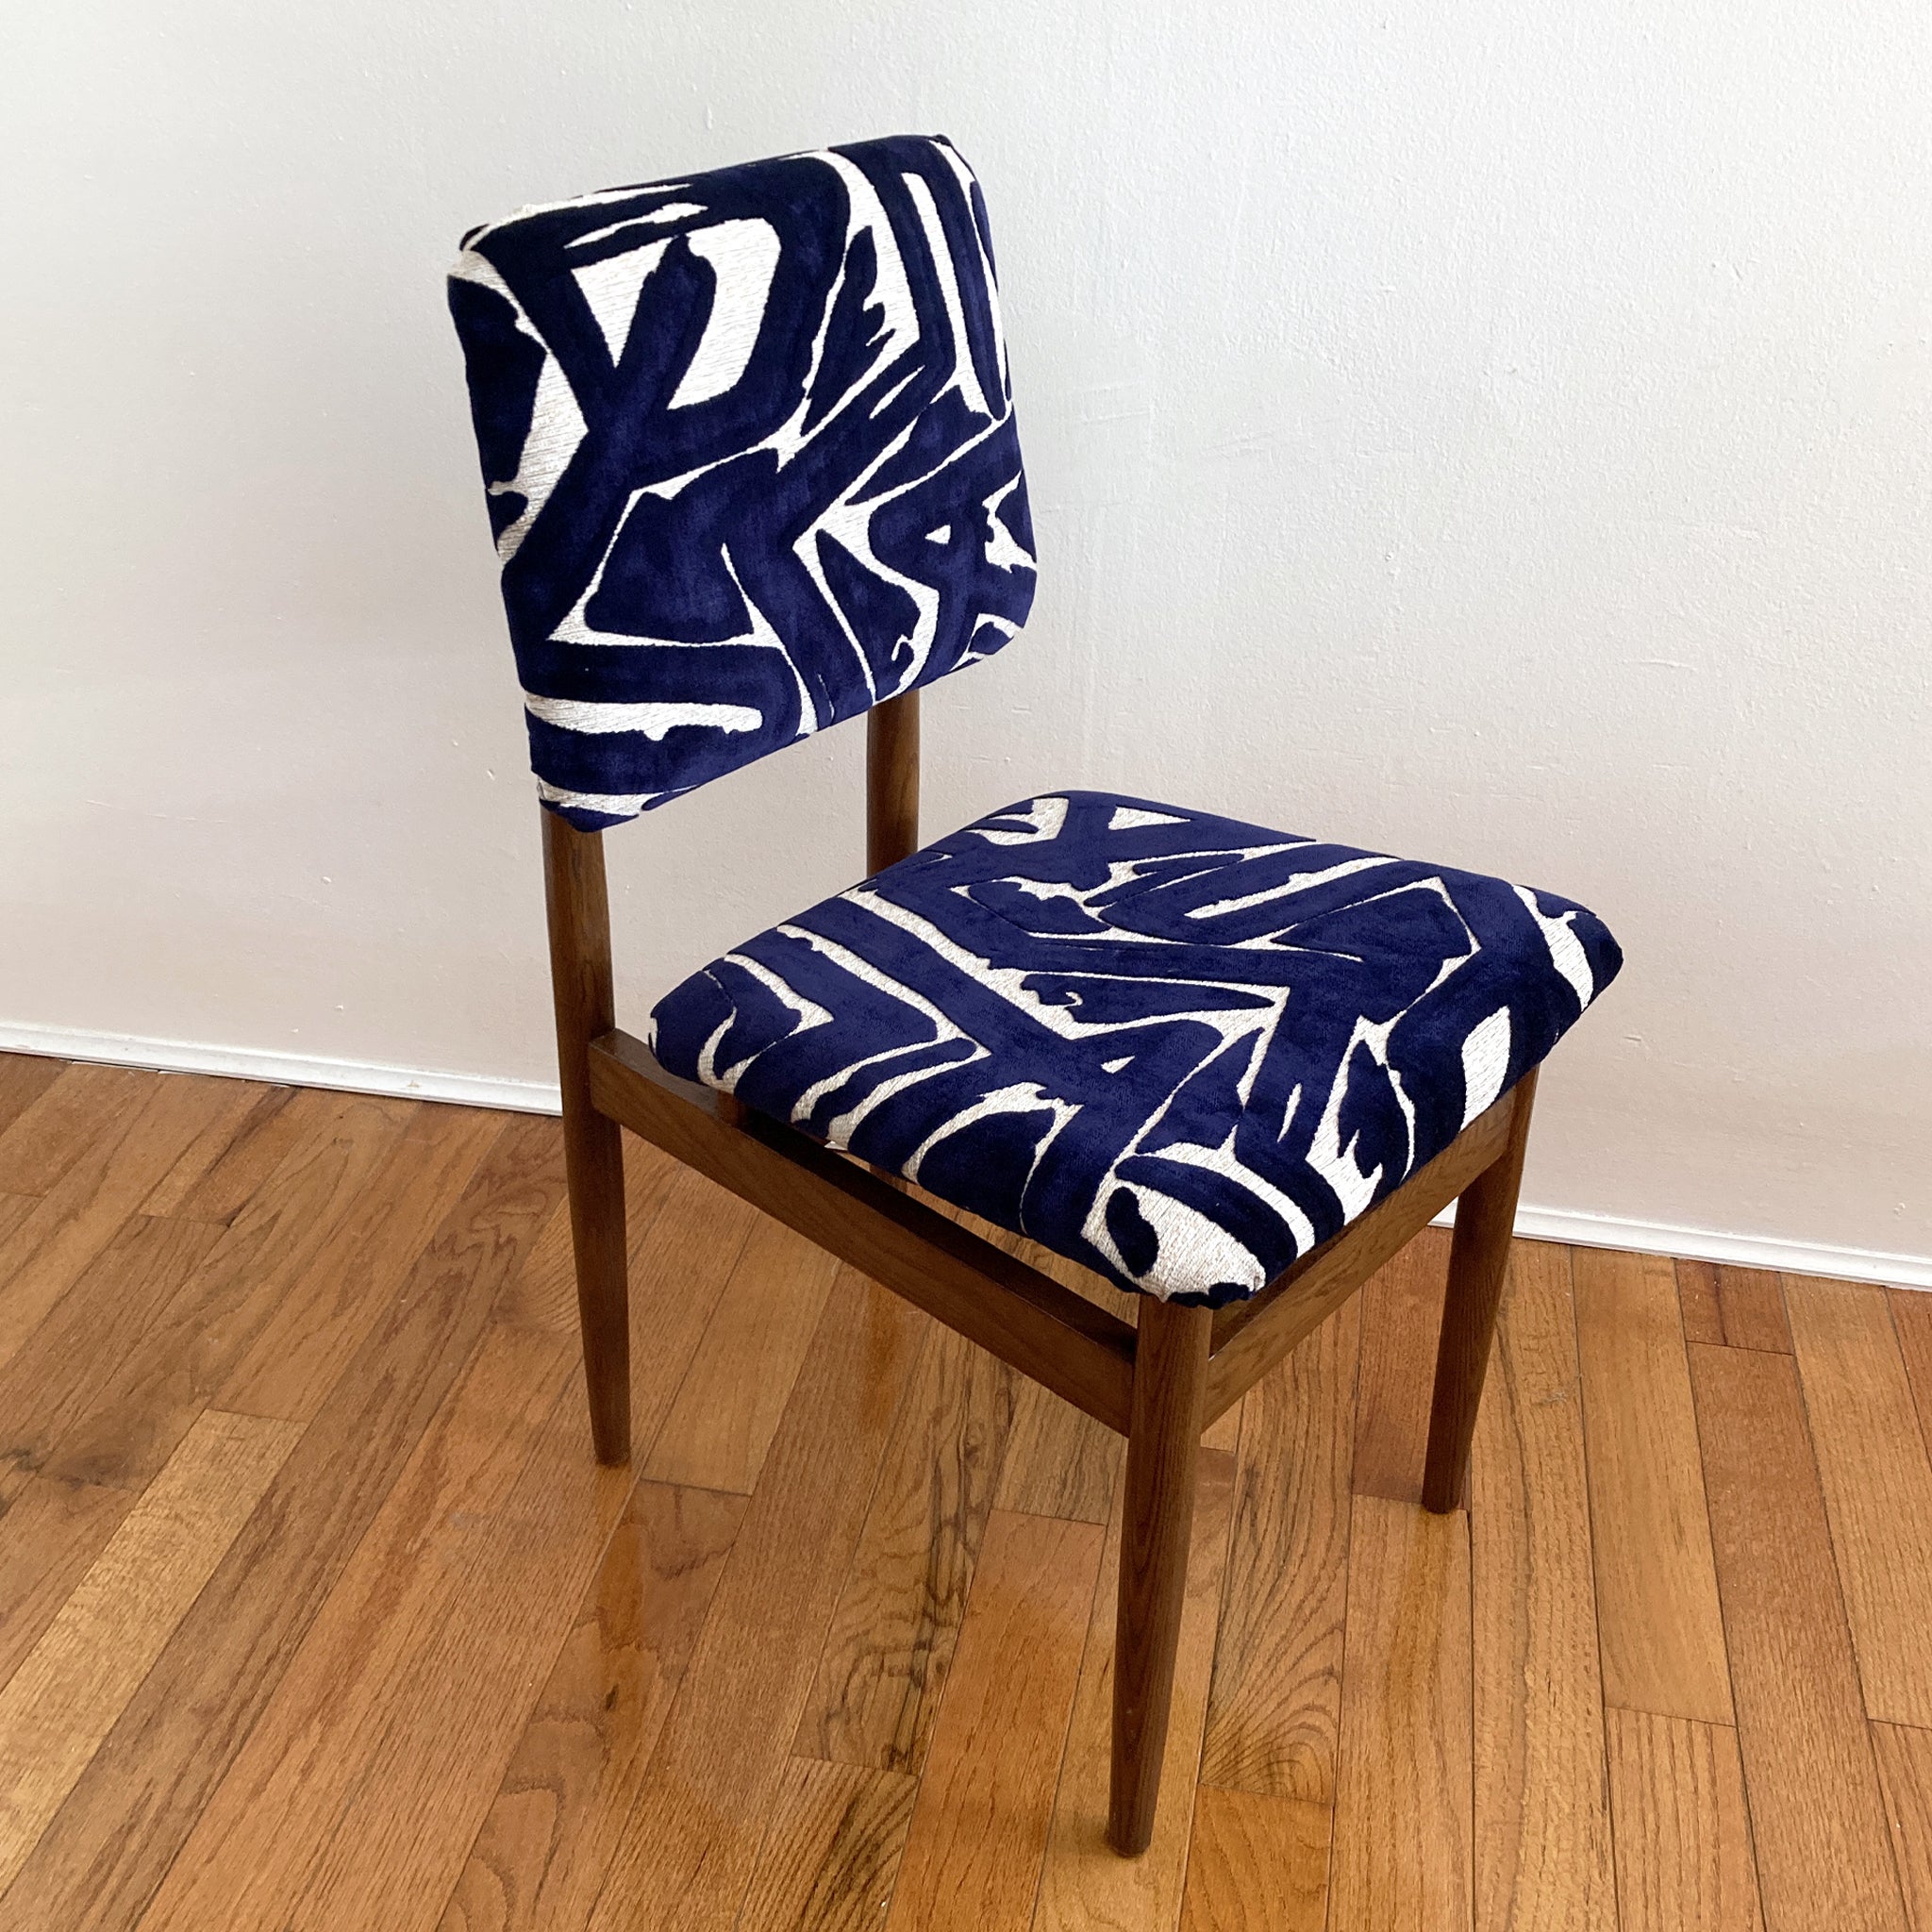 Magnifique chaise du milieu du siècle, dans le style d'Arne Vodder. Structure en chêne, assise et dossier retapissés de tissu indigo et écru, le motif de velours indigo en relief est absolument resplendissant. Structurellement solide,